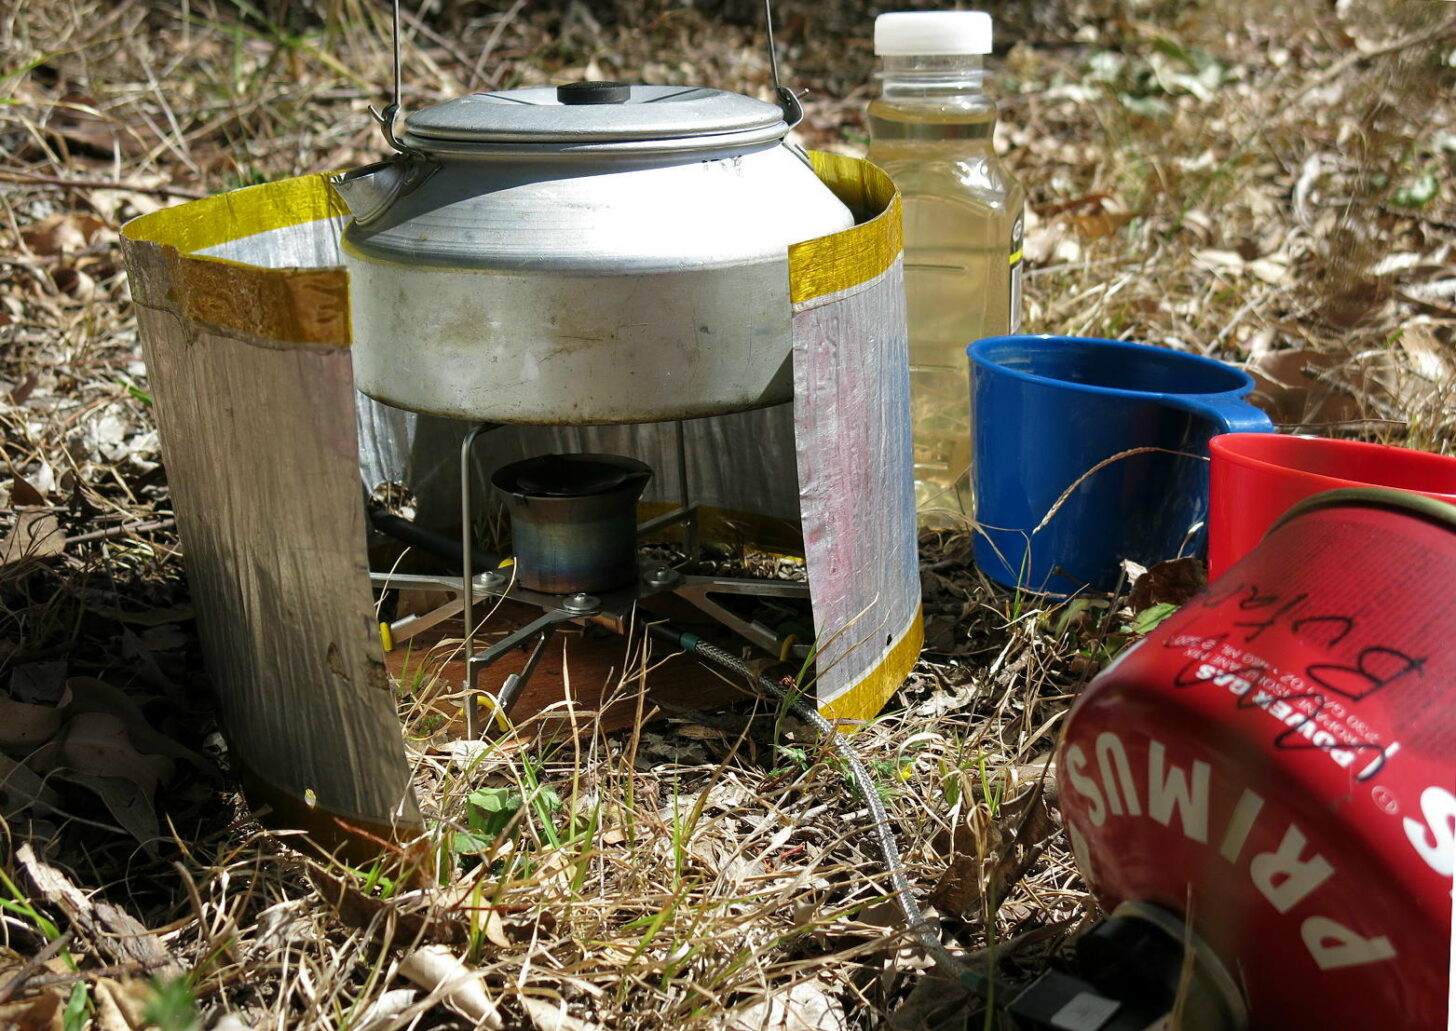 远程倒置罐炉正在使用的照片